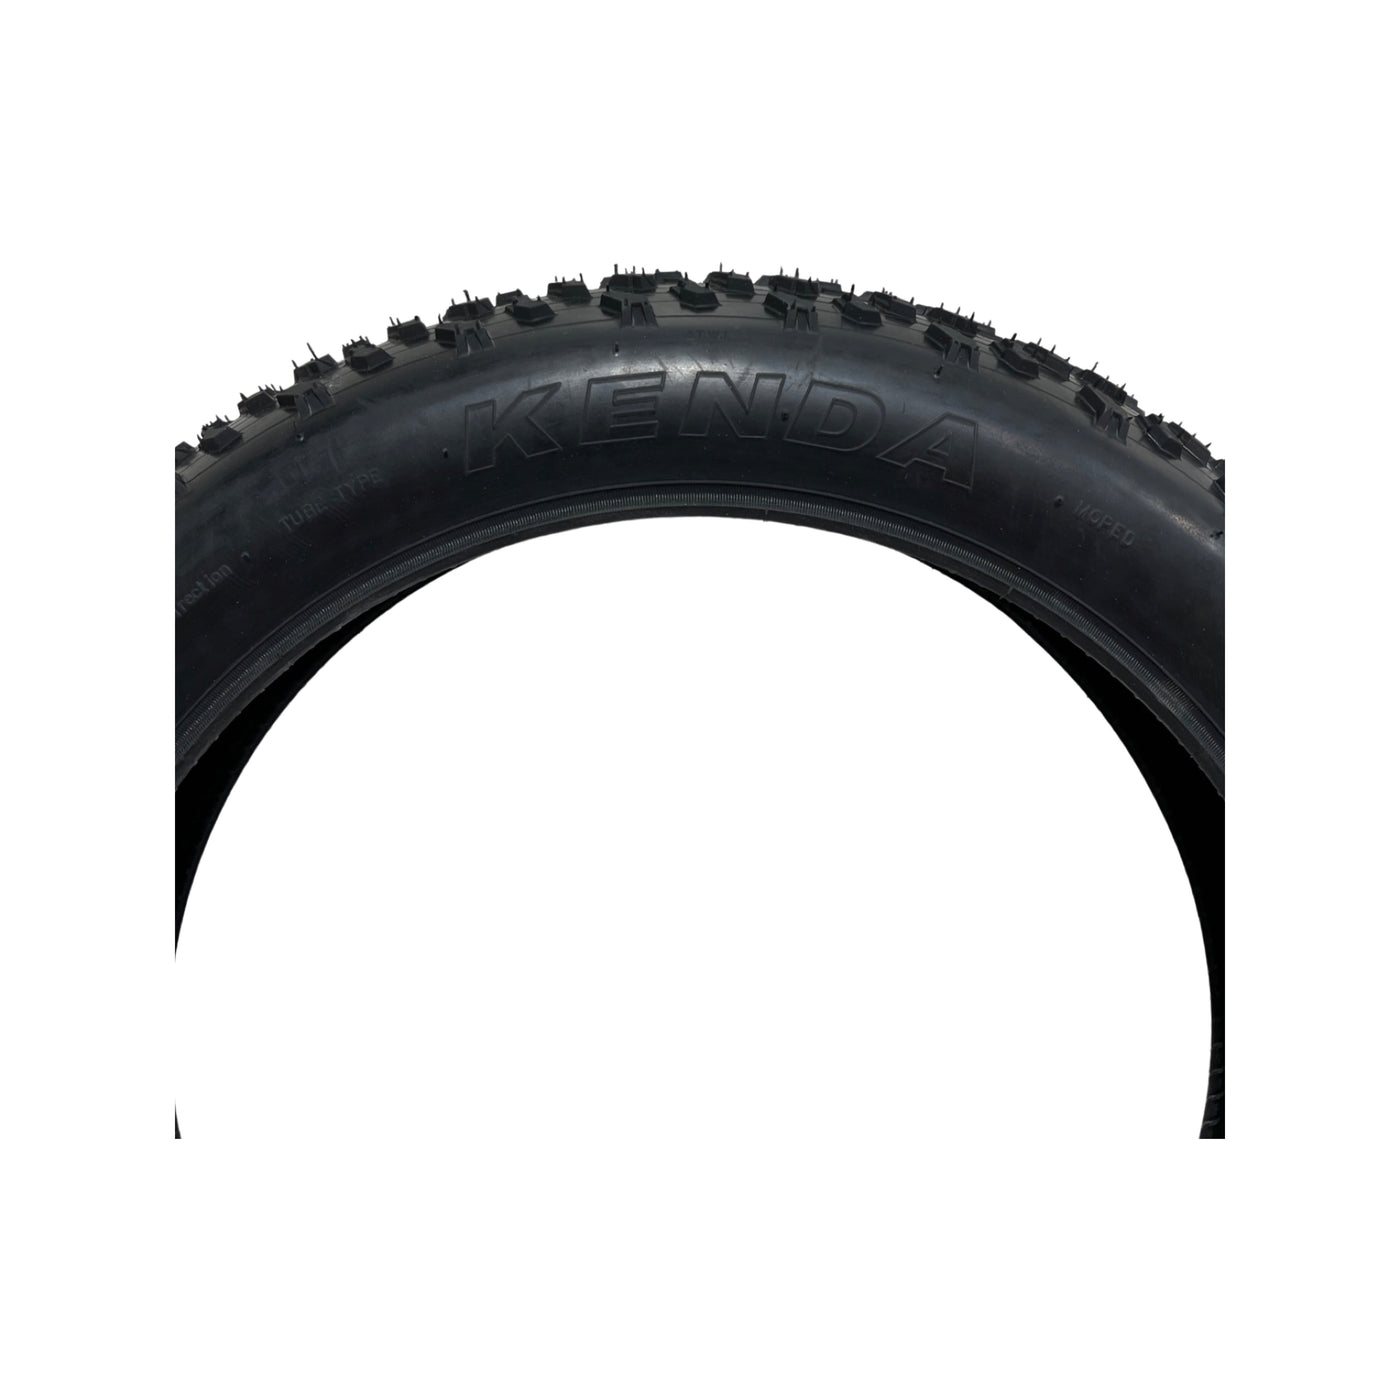 Kenda Off-Road Tire 20x4